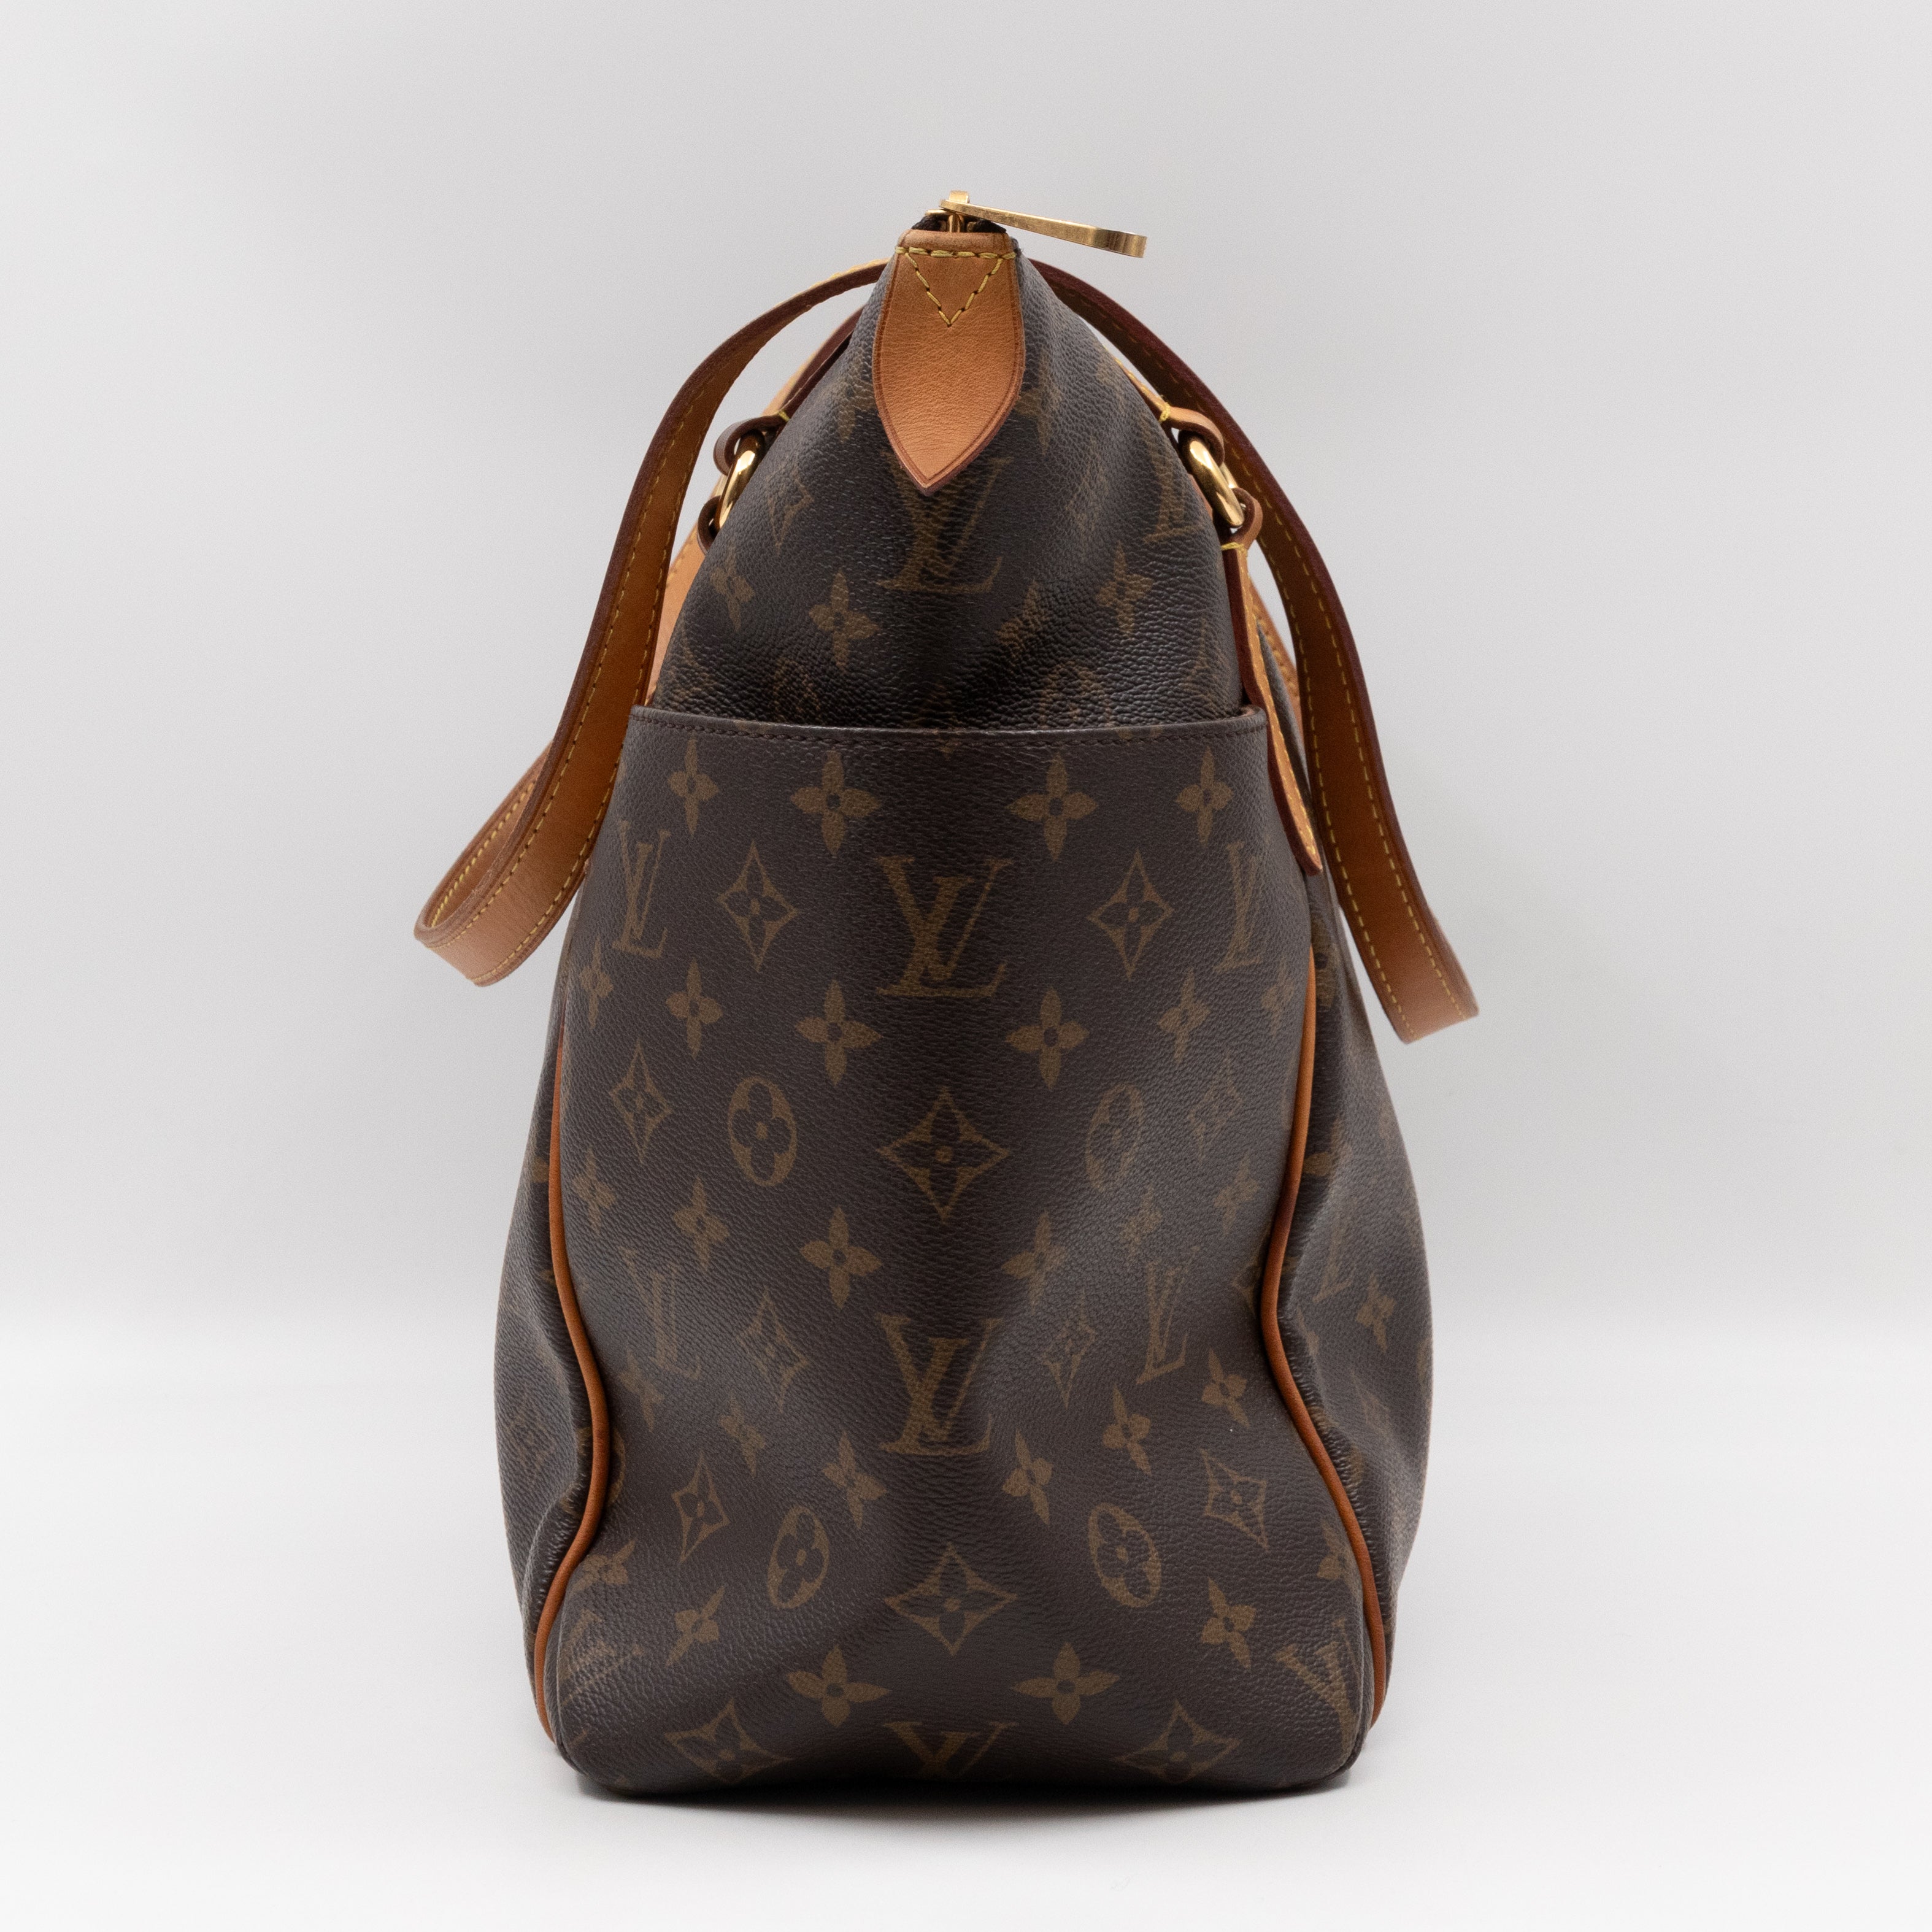 Louis Vuitton, a 'Totally' handbag, 2015. - Bukowskis